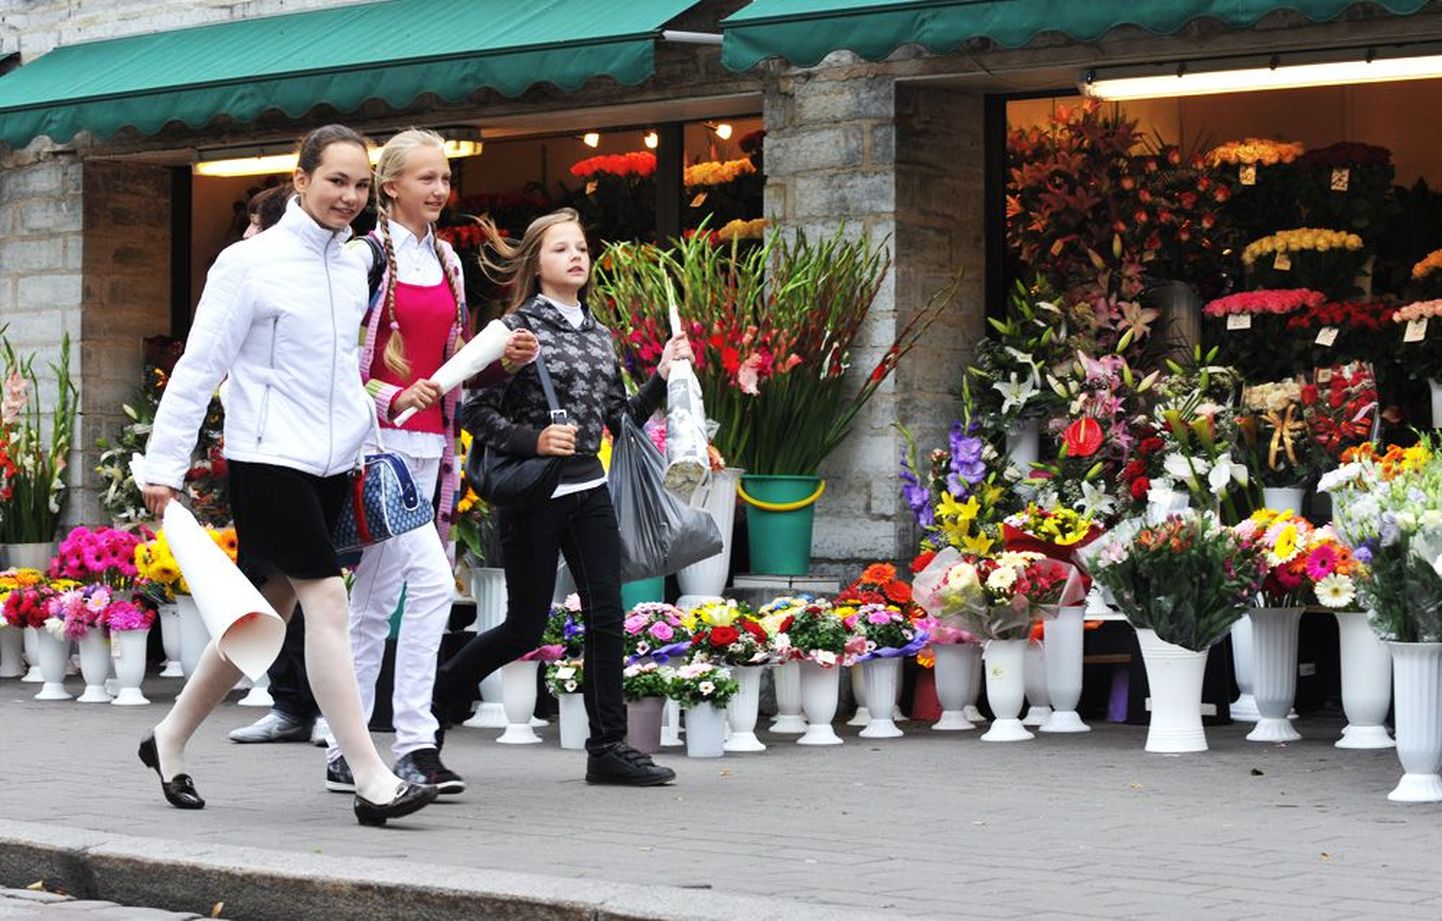 Koolijütse vooris eile Tallinnas Viru tänava lillekioskite ees tihedalt ja keegi tühjade kätega lahkuma ei pidanud.